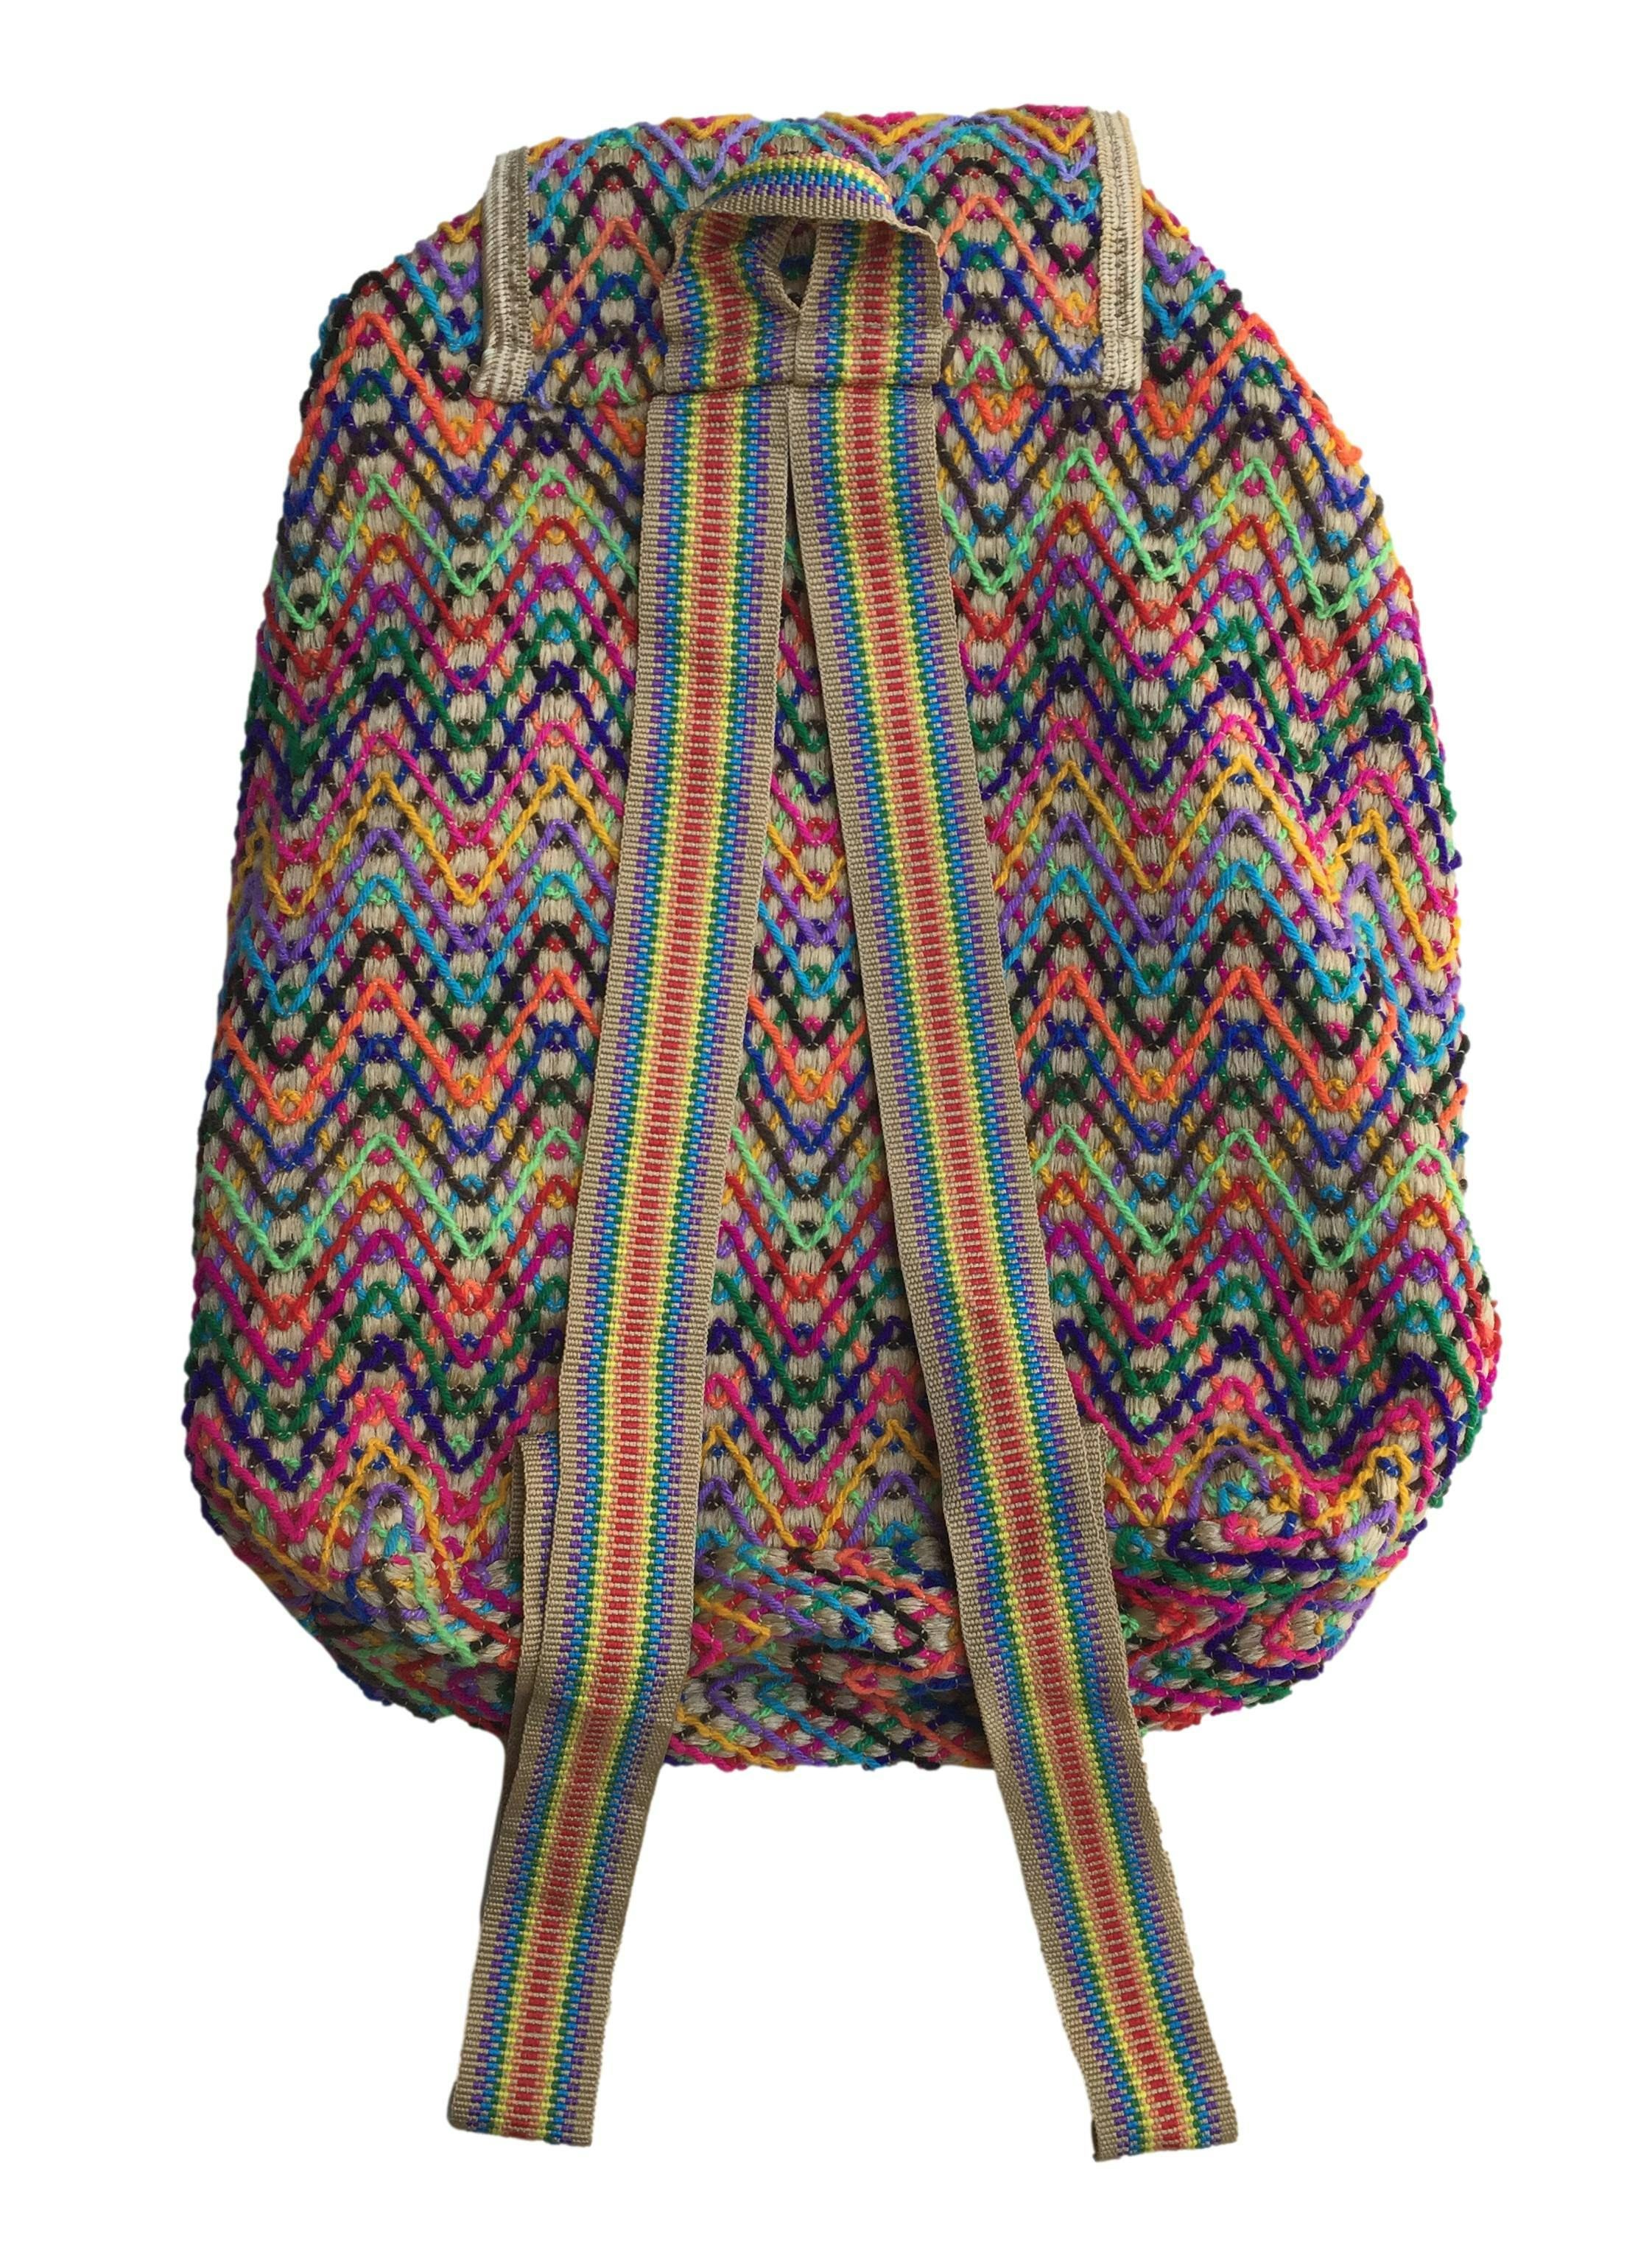 Mochila artesanía mexicana beige con hilos multicolor, forrada. Medidas 28x35cm